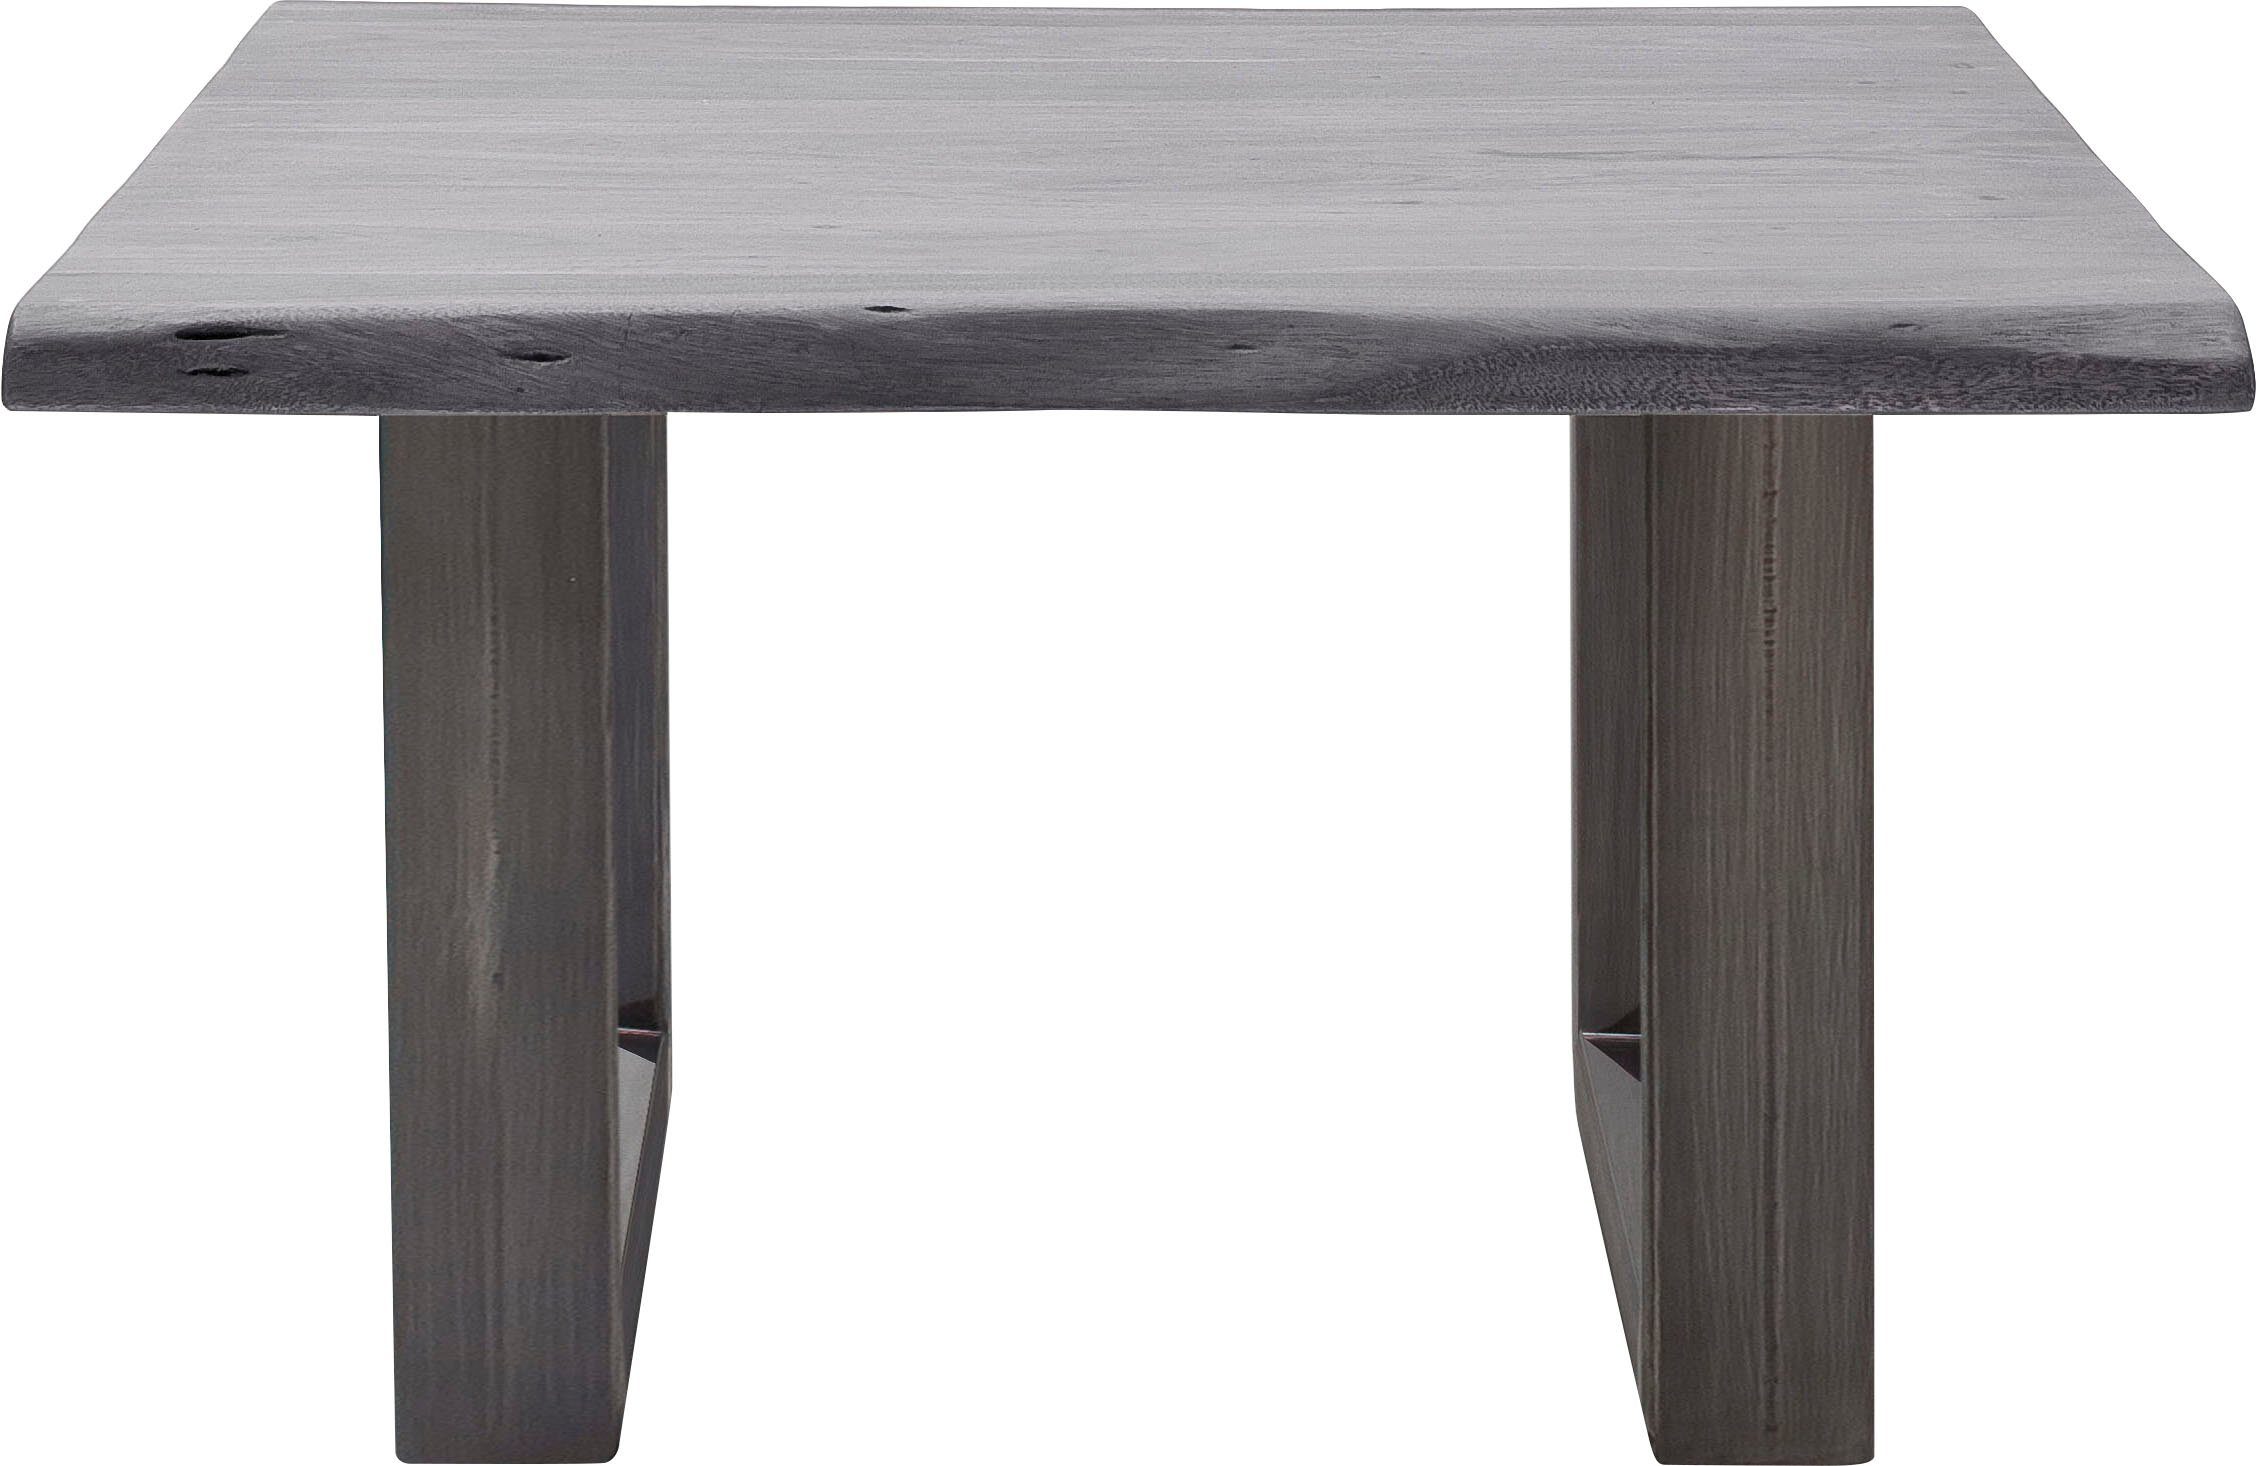 mca furniture salontafel cartagena salontafel massief hout met boomstamrand en natuurlijke kieren en gaatjes grijs